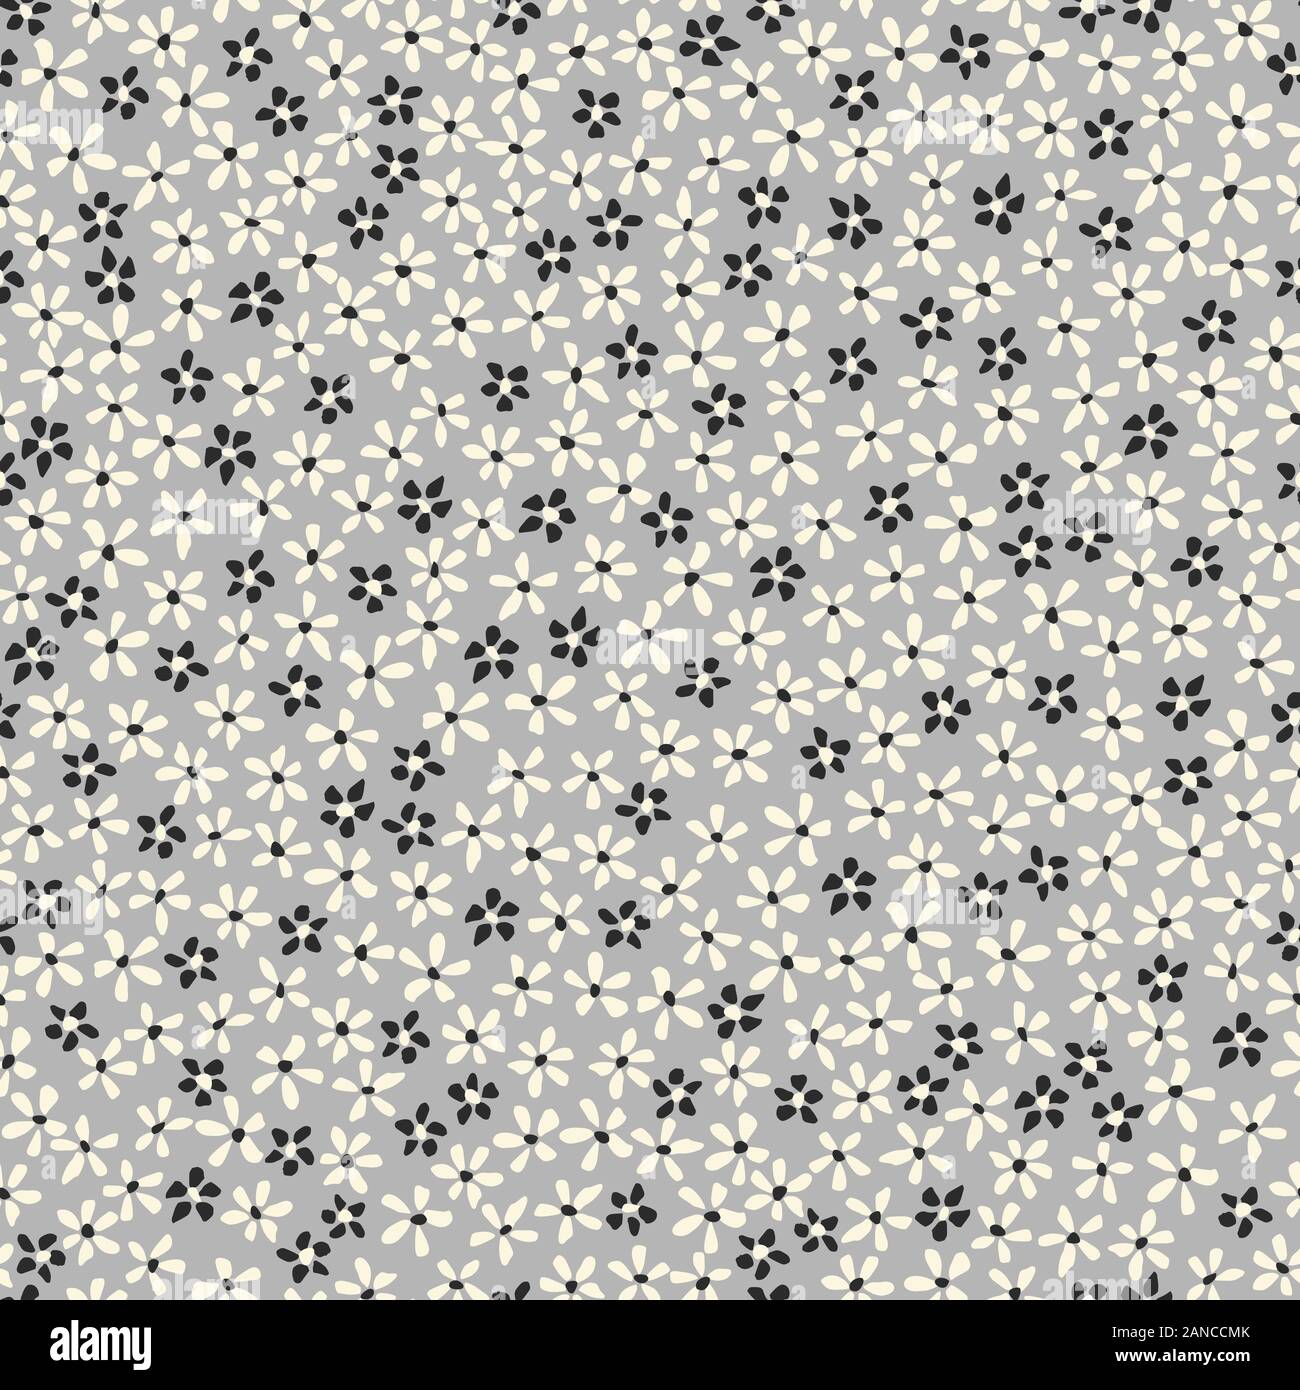 Allover Ditsy Floral motif transparent graphiques vectoriels. Petite Main simpliste tirée White Daisies, dispersés Abstract fleurit sur fond gris. Un minimum de Illustration de Vecteur